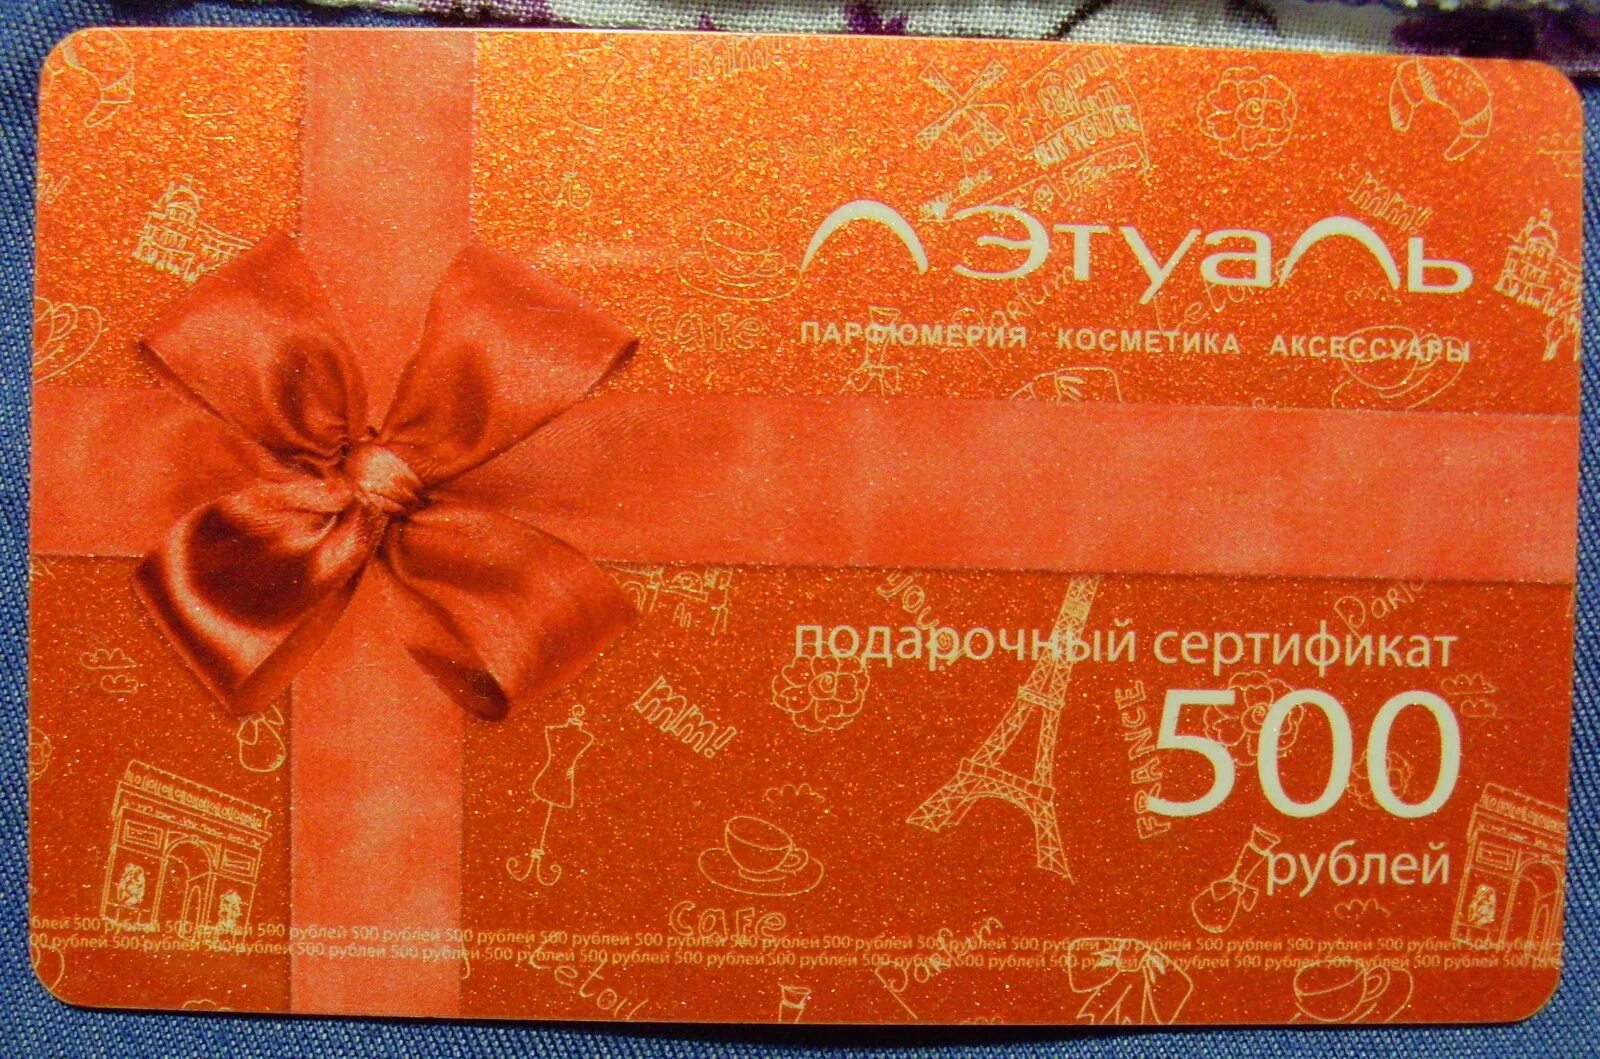 Подарочная карта. Подарочный сертификат летуаль. Подарочный сертификат летуаль 500 рублей. Сертификат подарочный 500.